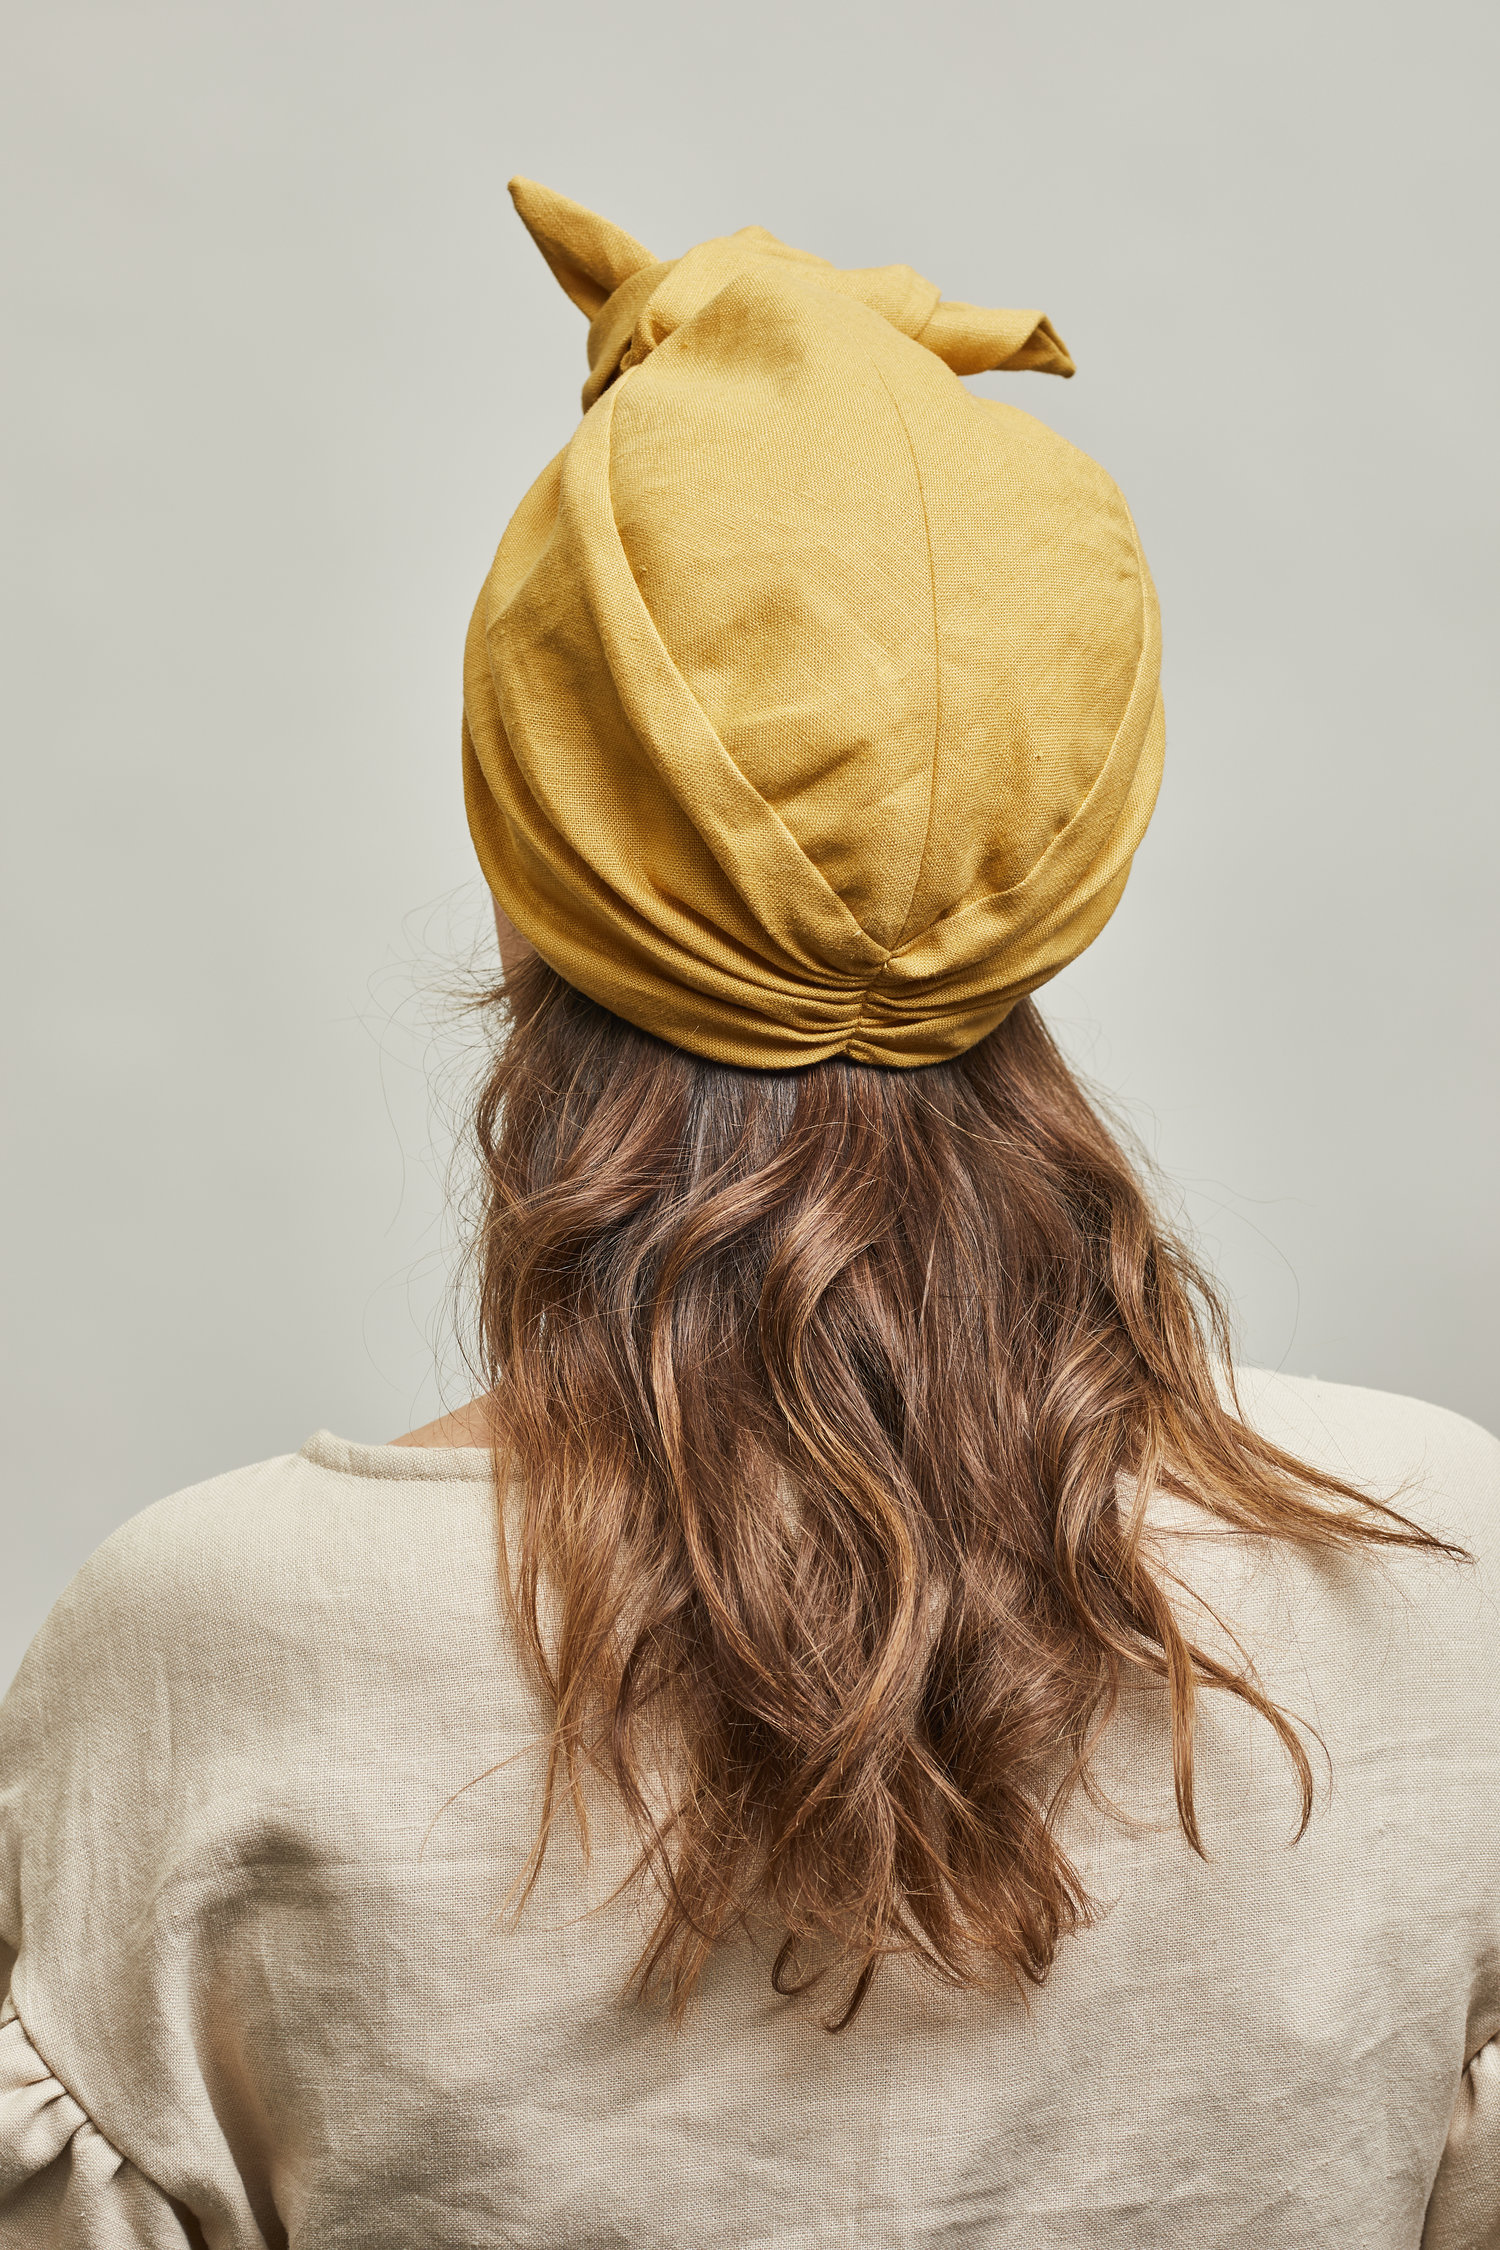 Heirloom+hats+Parelli+turban+hat+ochre+yellow+m3.jpg?format=1500w